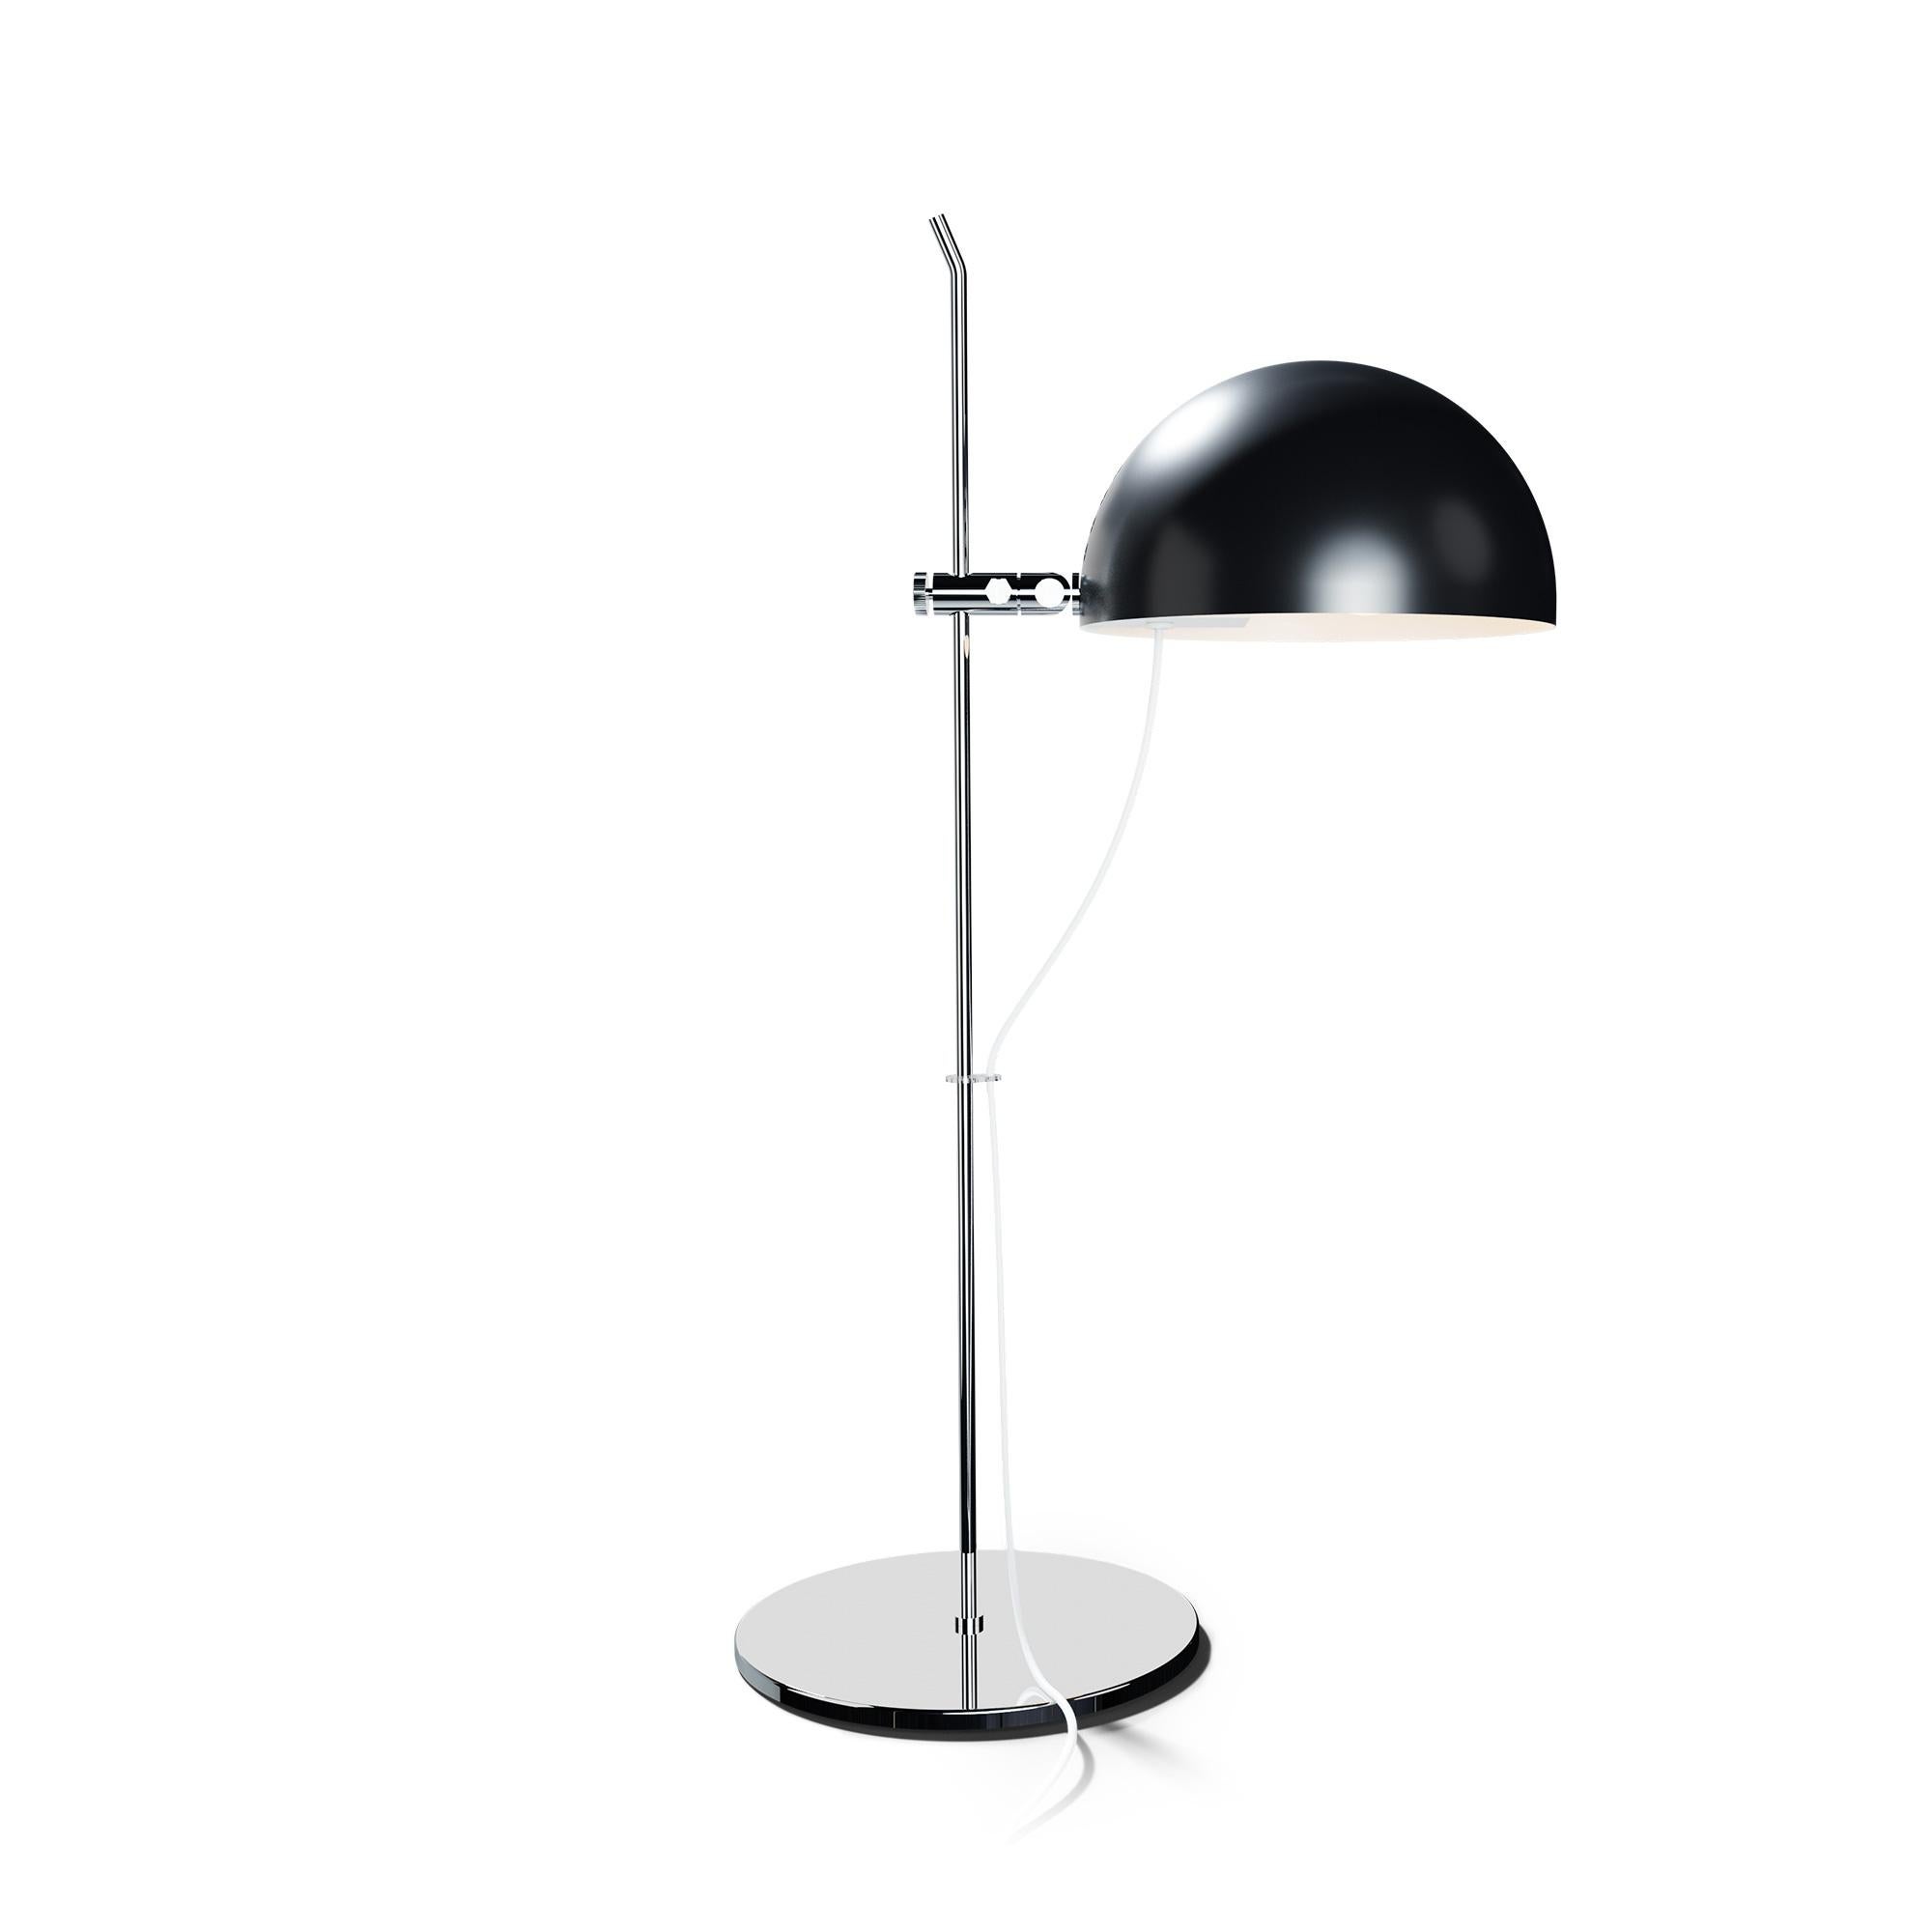 French Alain Richard 'A21' Desk Lamp in Black for Disderot For Sale